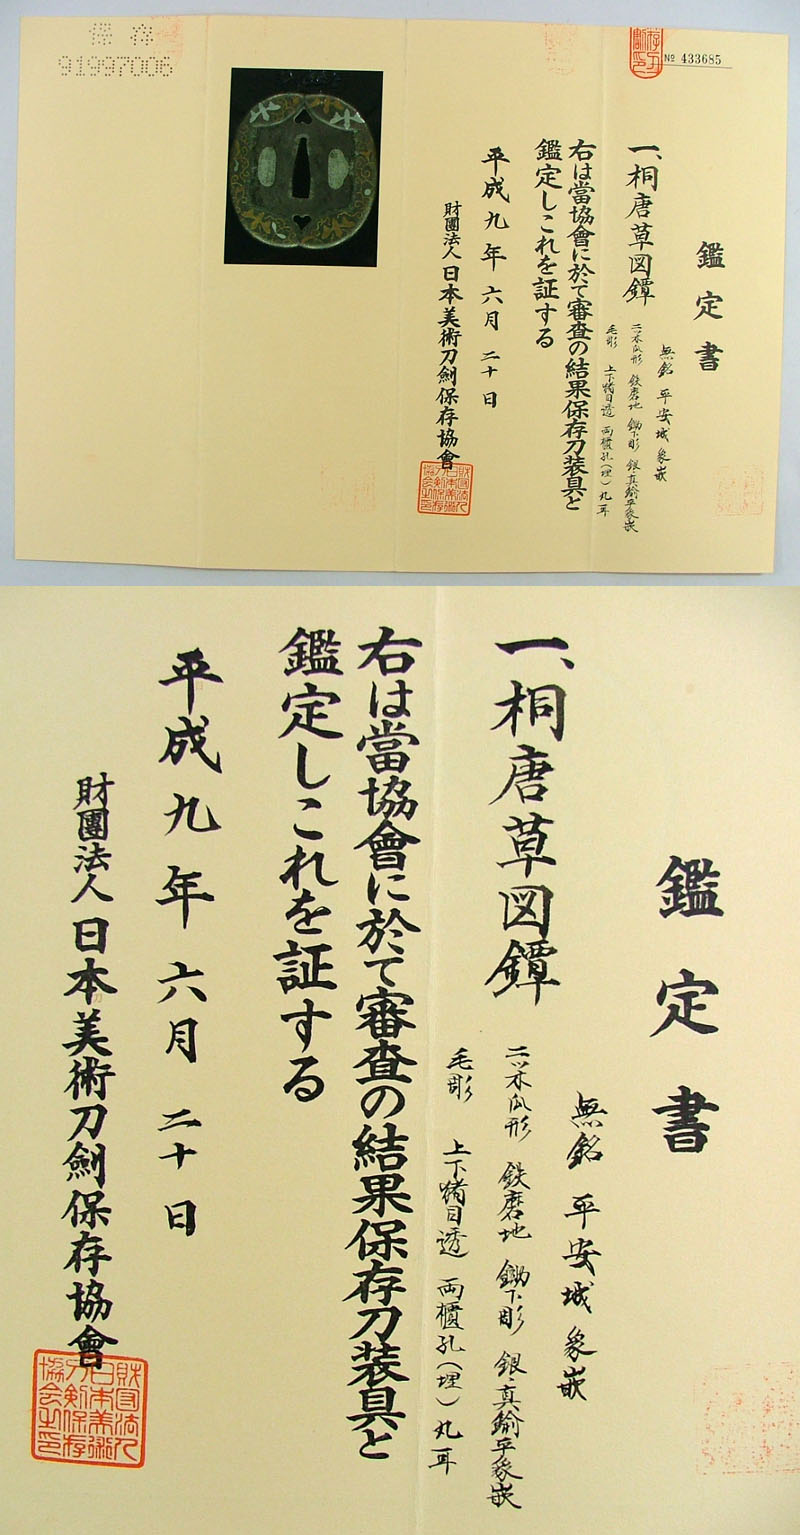 桐唐草図鐔 無銘 平安城 象嵌 Picture of Certificate